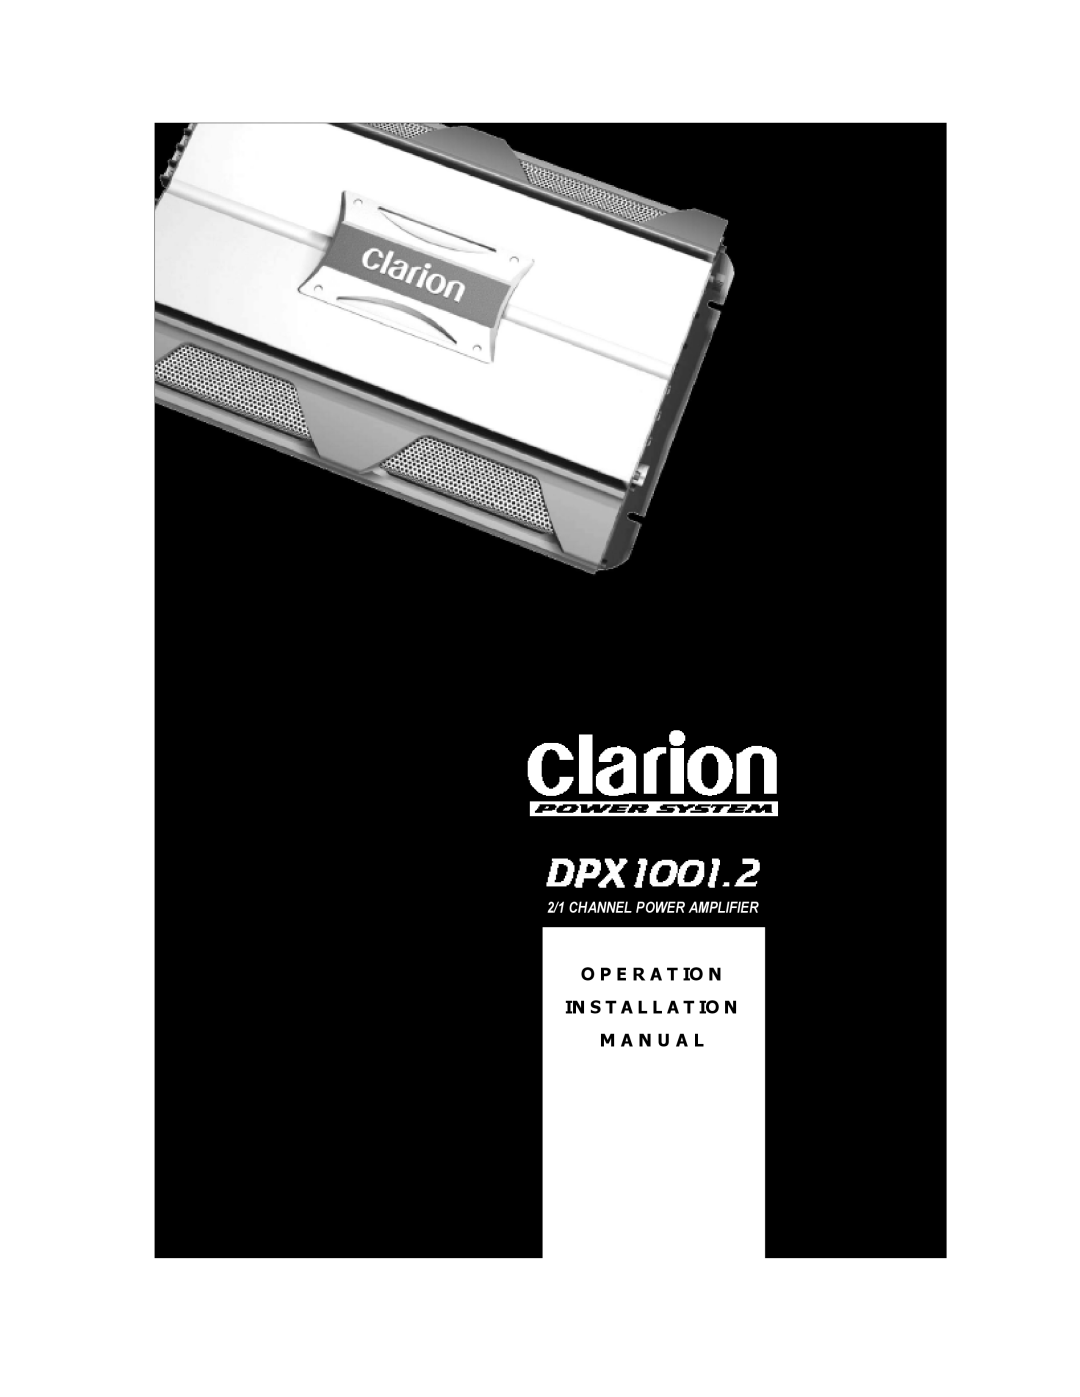 Clarion DPX1001.2 installation manual O P E R A T Io N In S T A L L A T Io N, M A N U A L, 2/1 CHANNEL POWER AMPLIFIER 